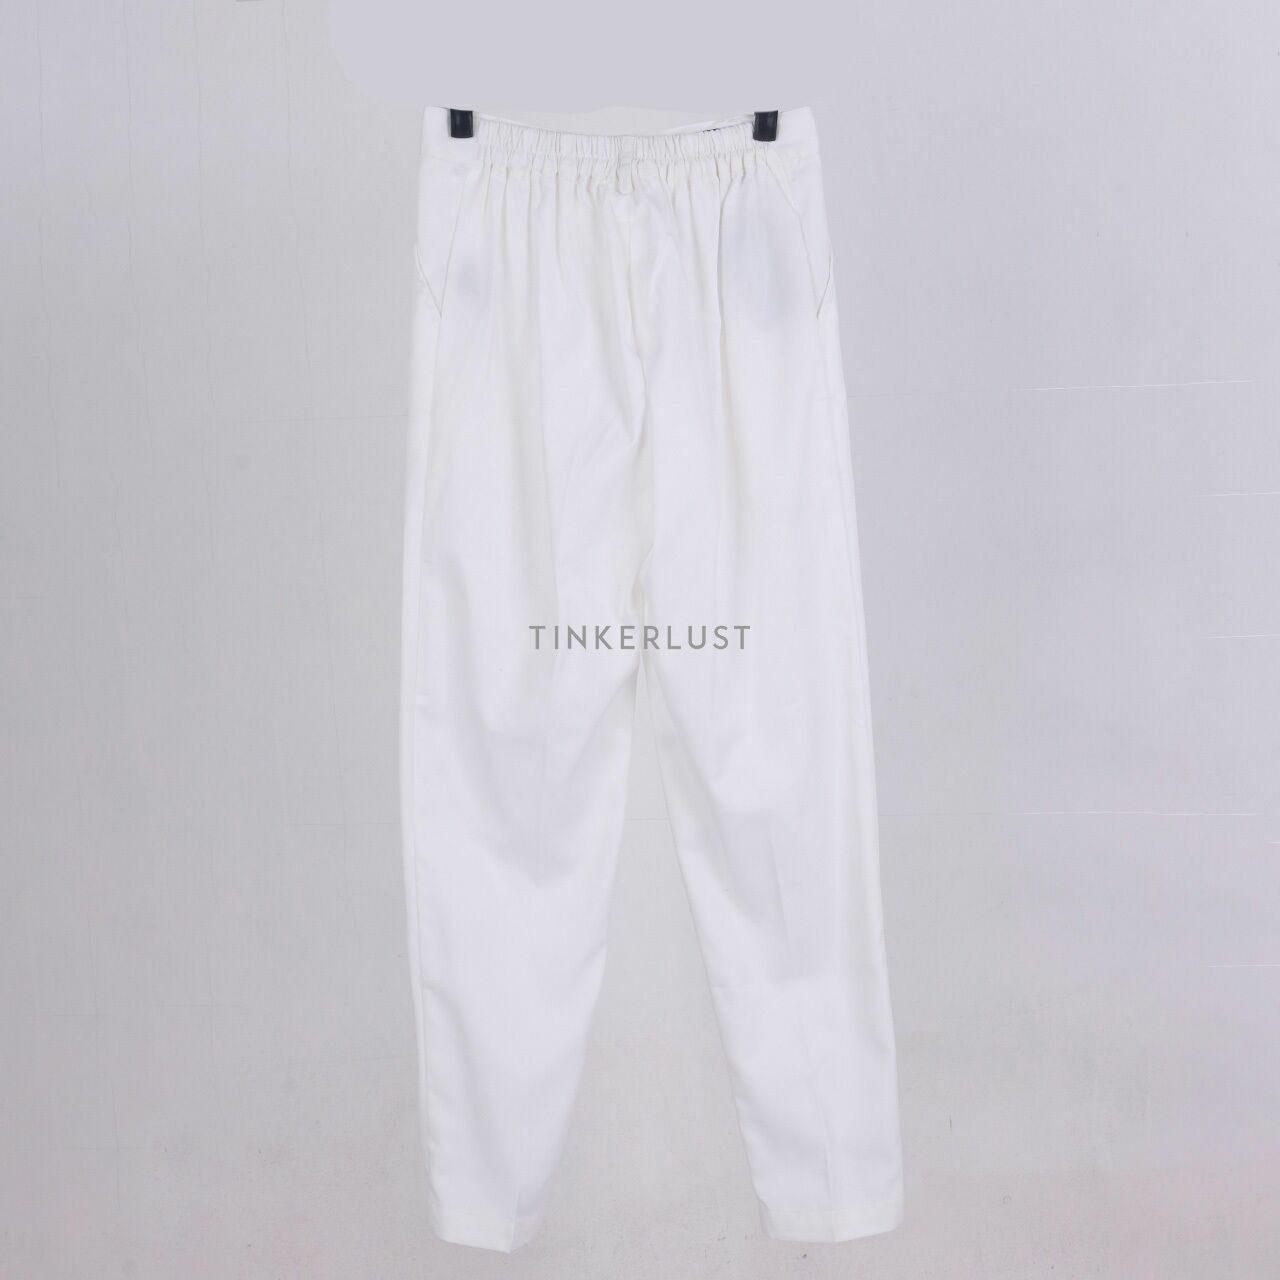 Then Blank White Long Pants